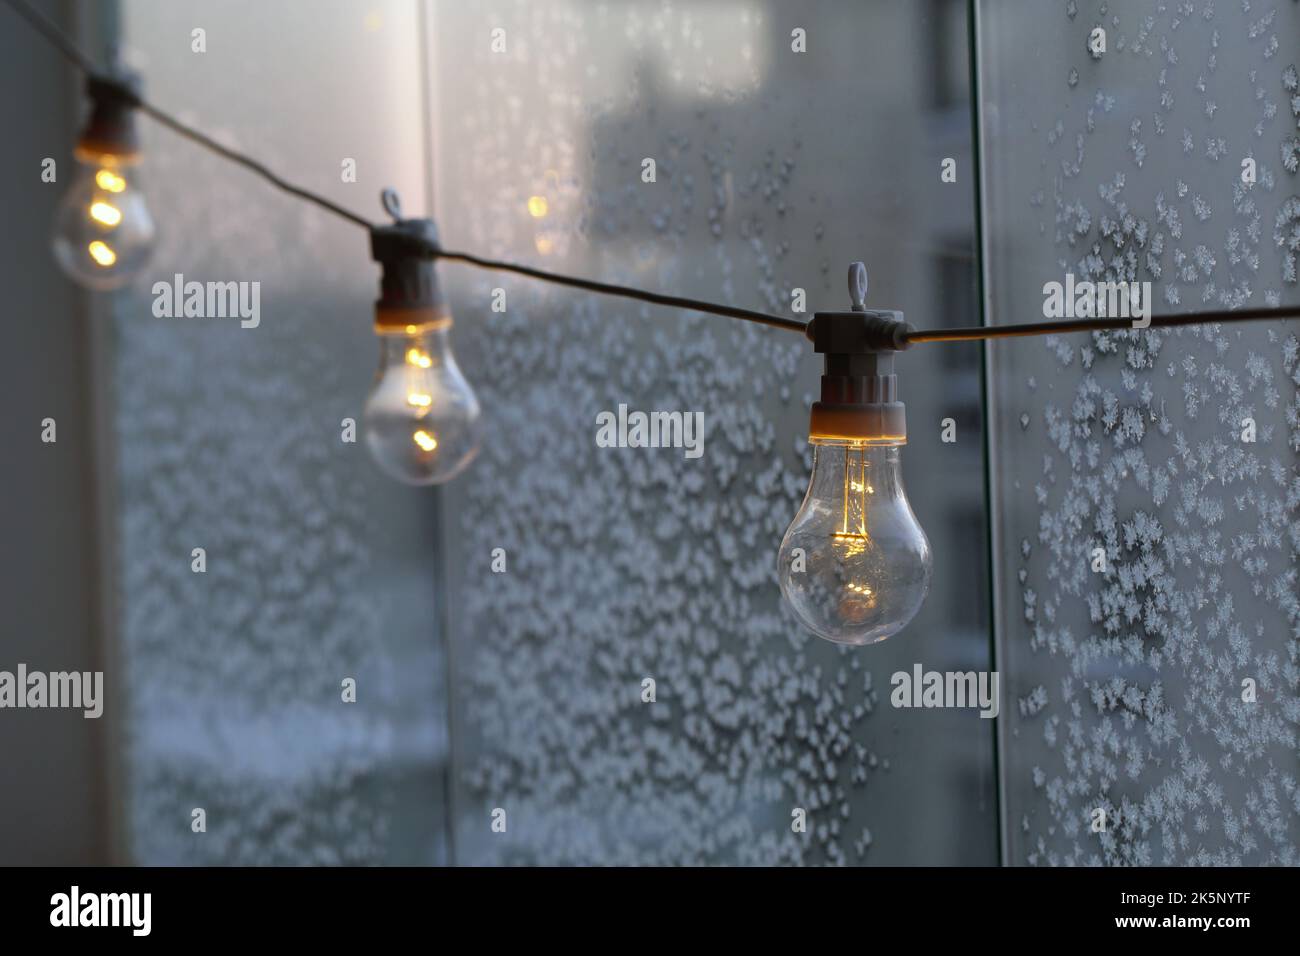 Ampoule simple décorative suspendue sur un balcon par temps froid. Verre avec cristaux de glace en arrière-plan. Énergie, crise énergétique et électricité. Banque D'Images